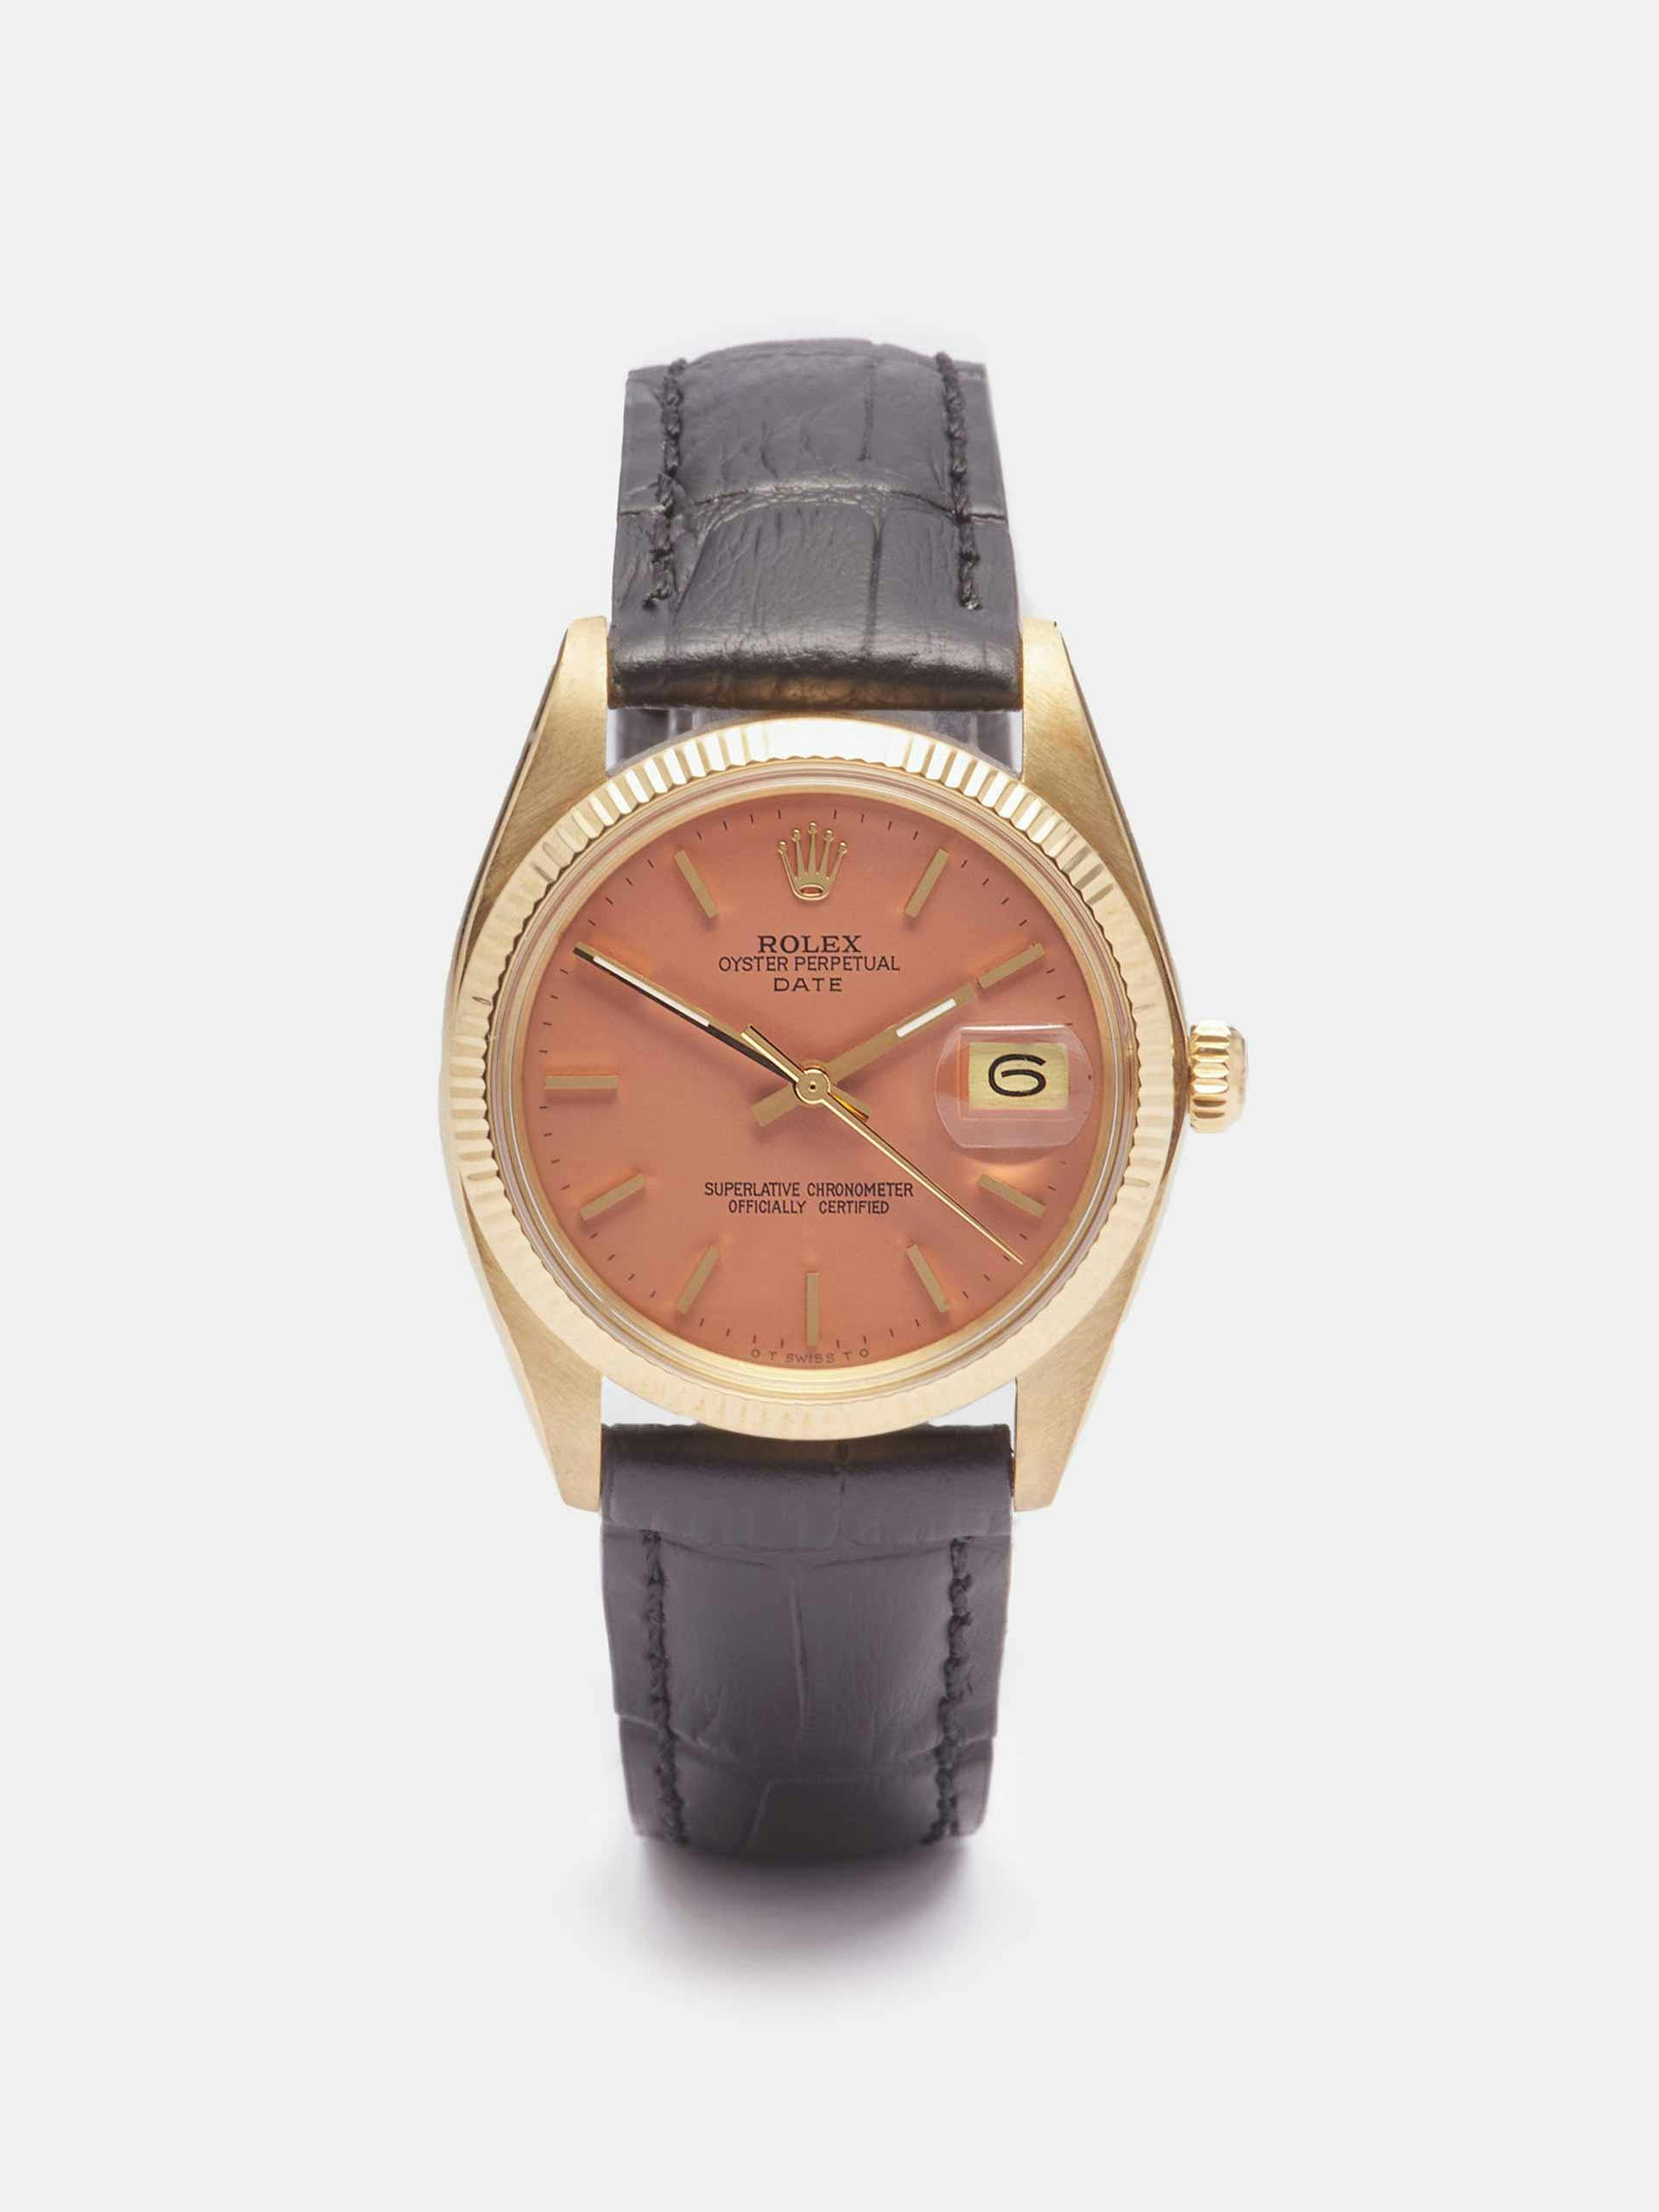 Vintage 18kt gold Rolex watch